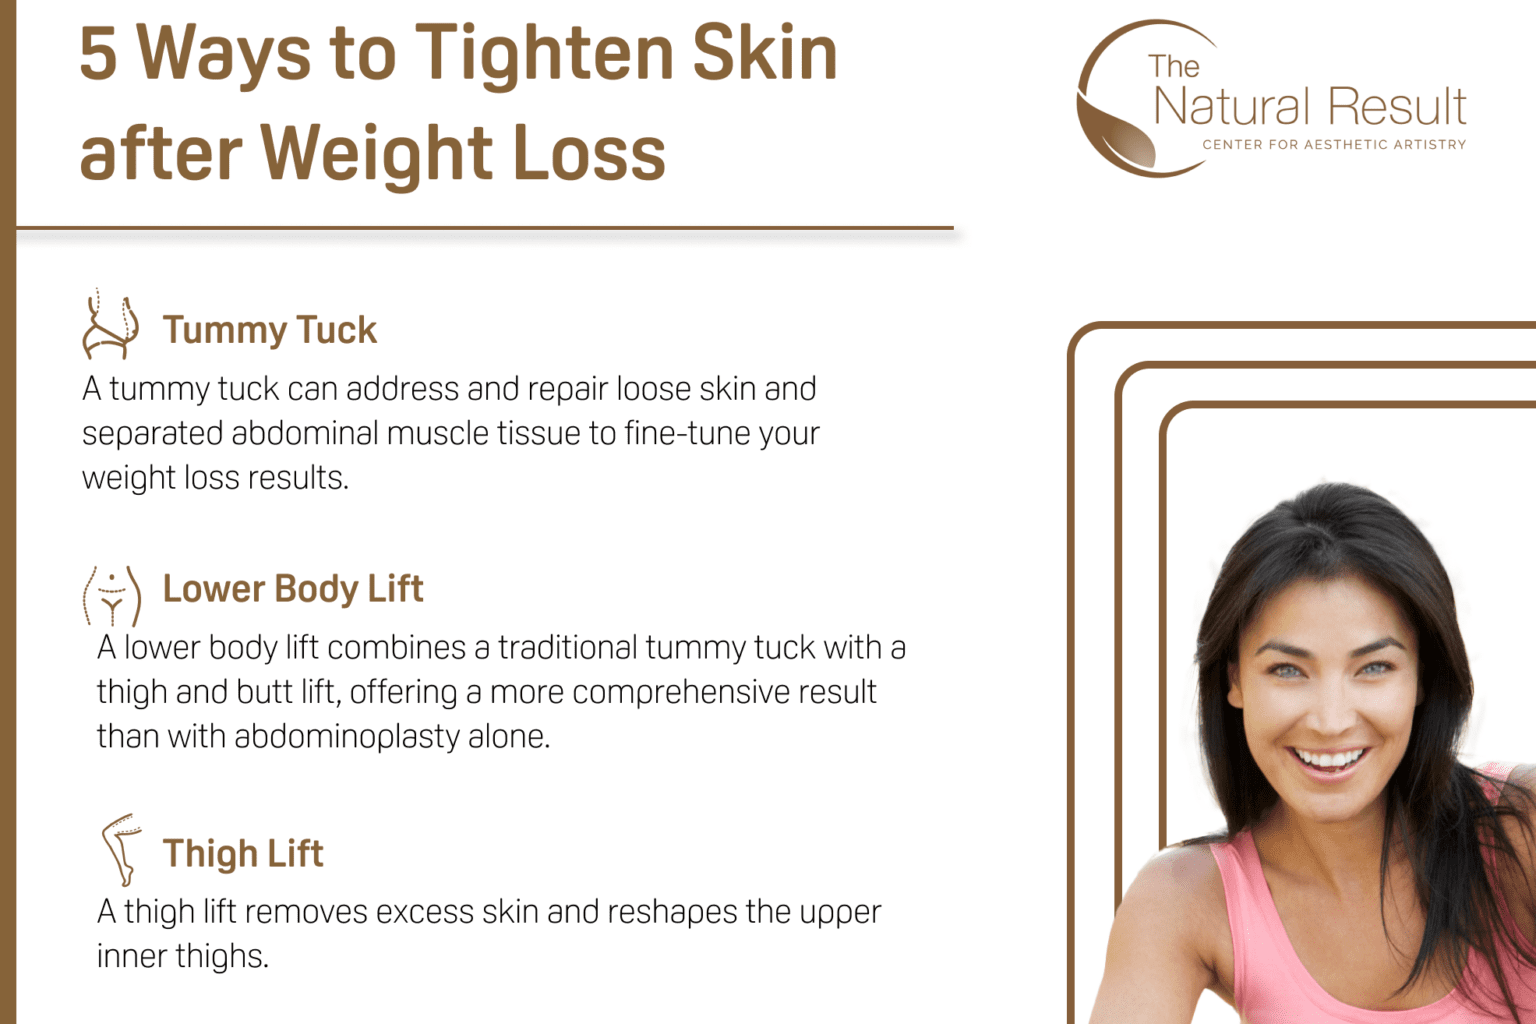 5 Ways to Tighten Skin Infographic